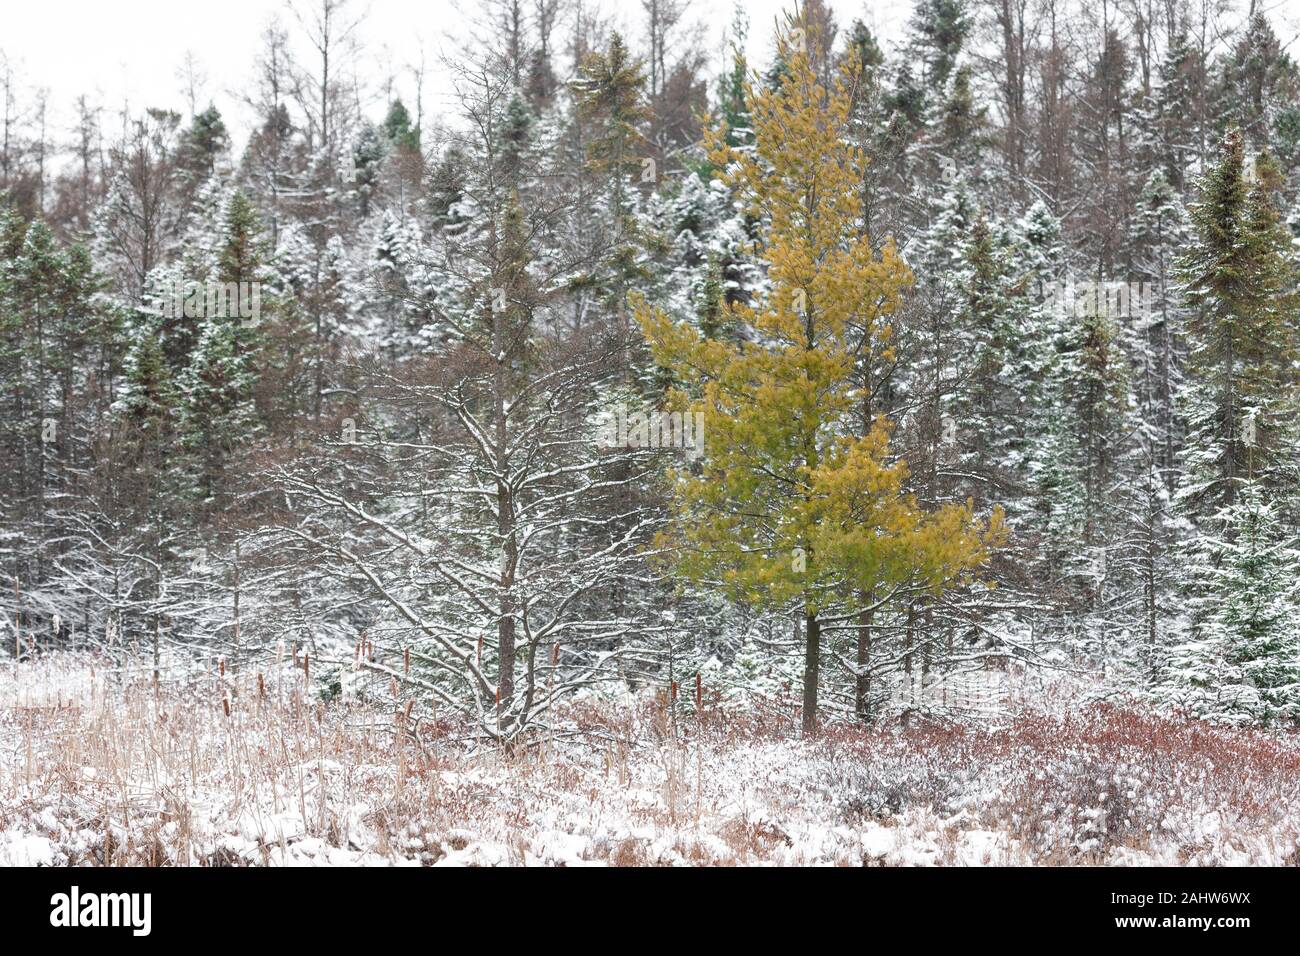 London, Kanada - 31. Dezember 2019. Ein frischer Schnee bedeckt Bäume in die sifton Moor, einem ökologisch sensiblen Gebiet innerhalb der Stadt. Stockfoto